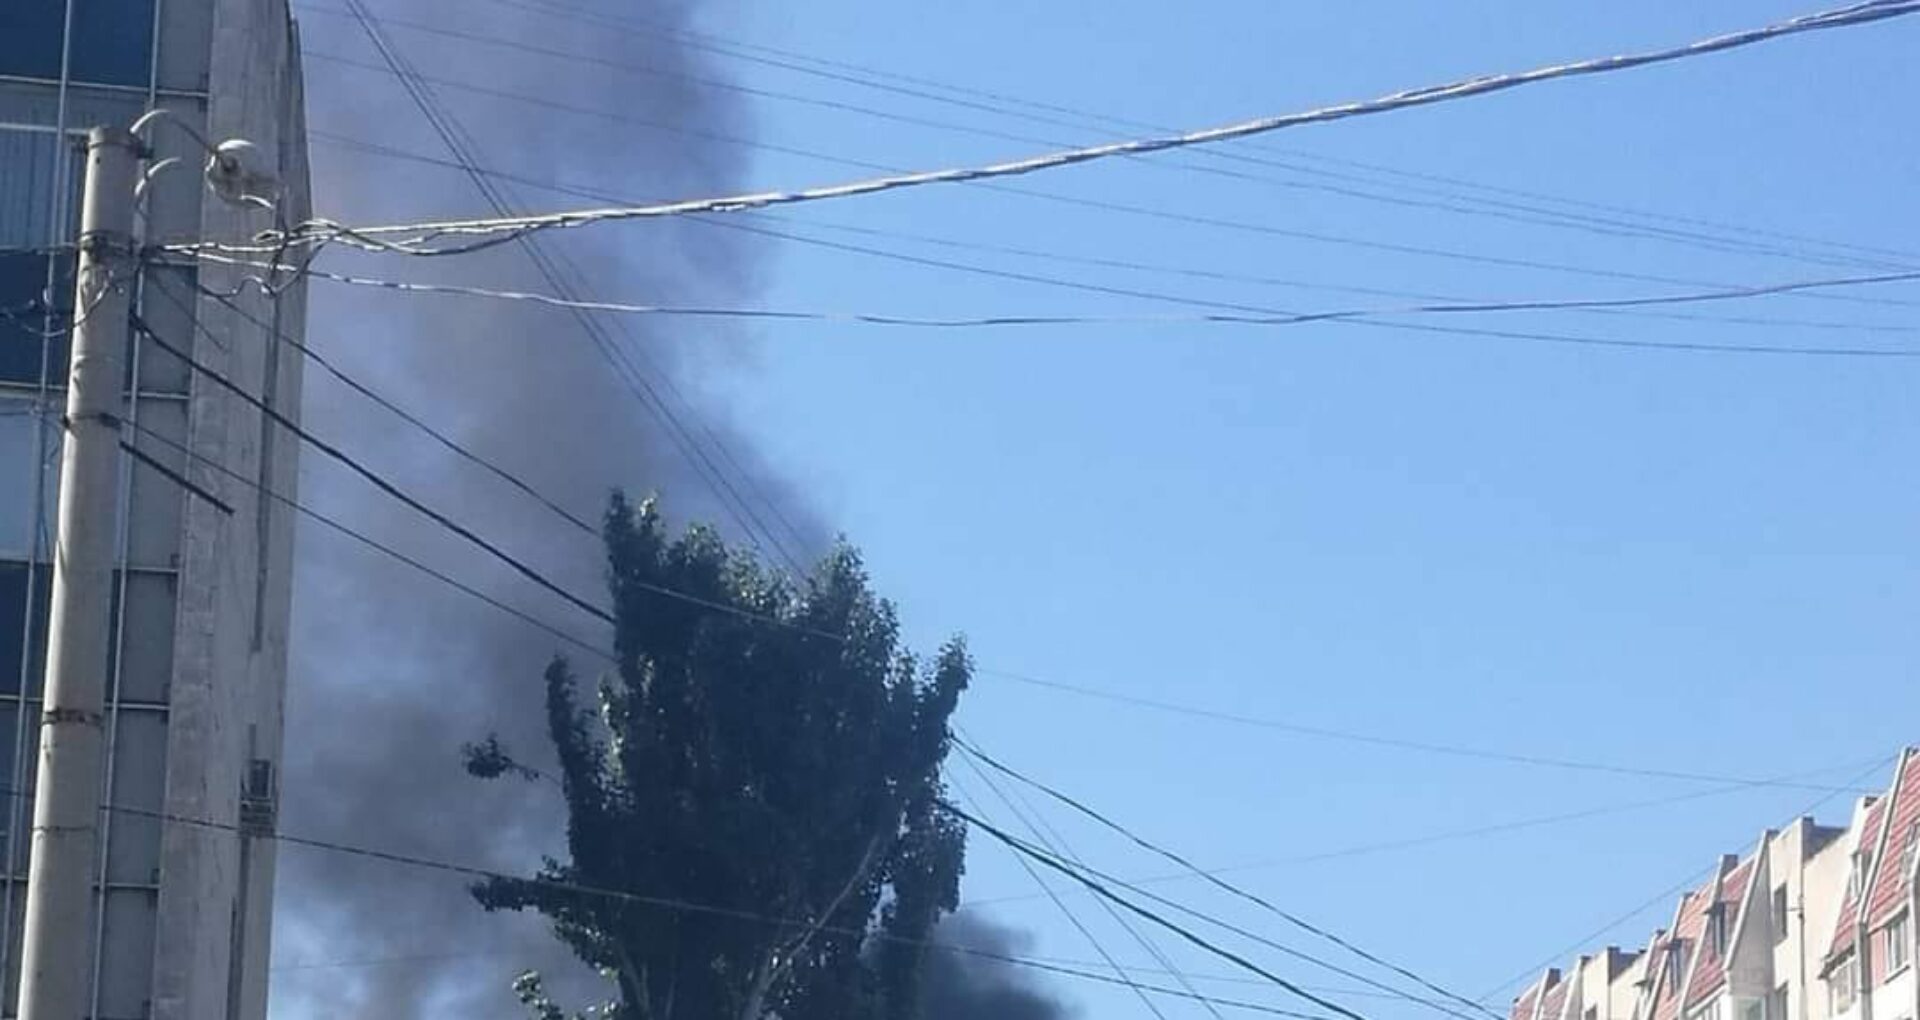 FOTO/ Incendiu în centrul Chișinăului. Trei echipaje de pompieri au stins flăcările